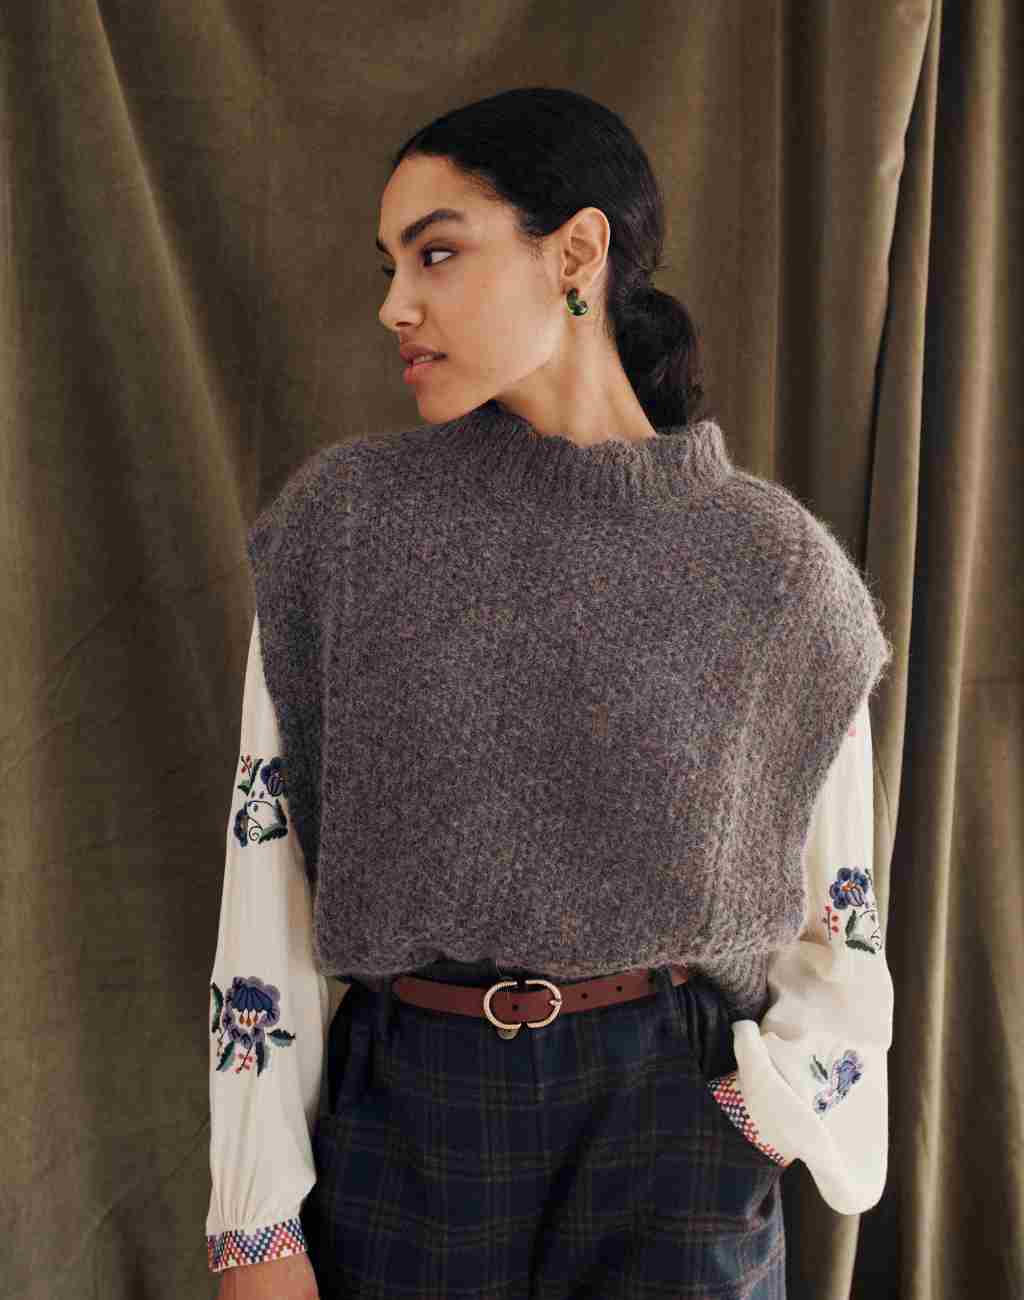 Sleeveless Knit Sigou Sweater with Scalloped Neckline